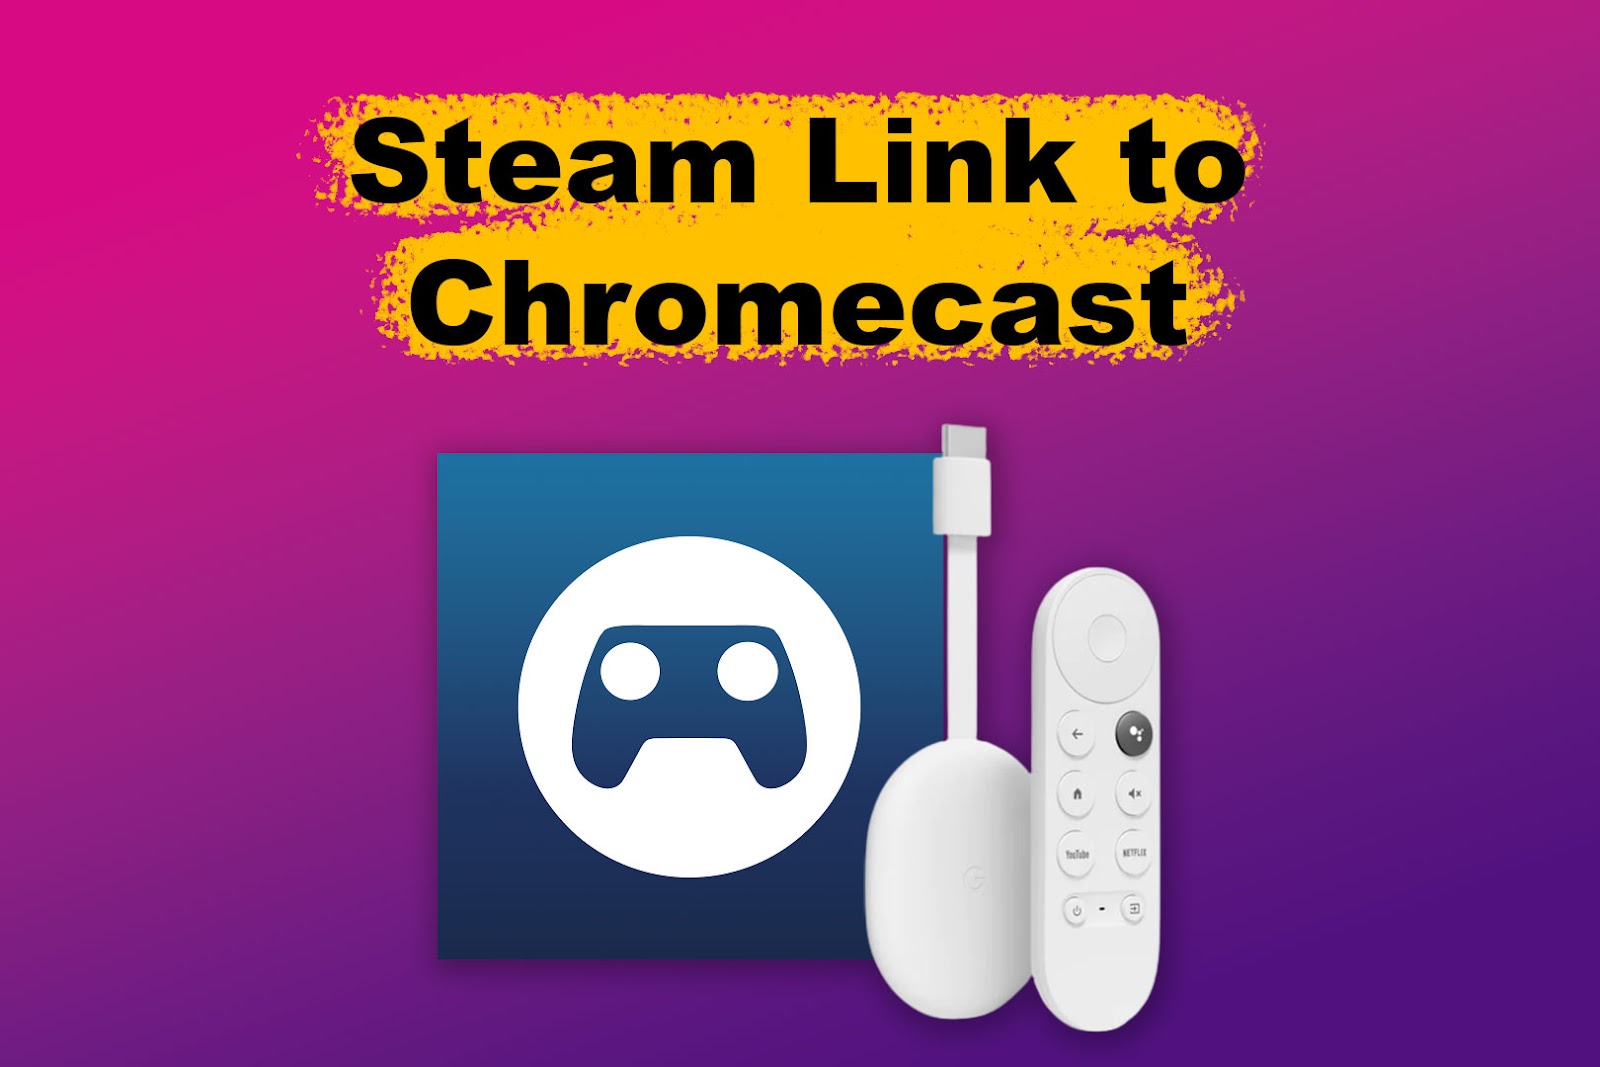 Steam Link to Chromecast